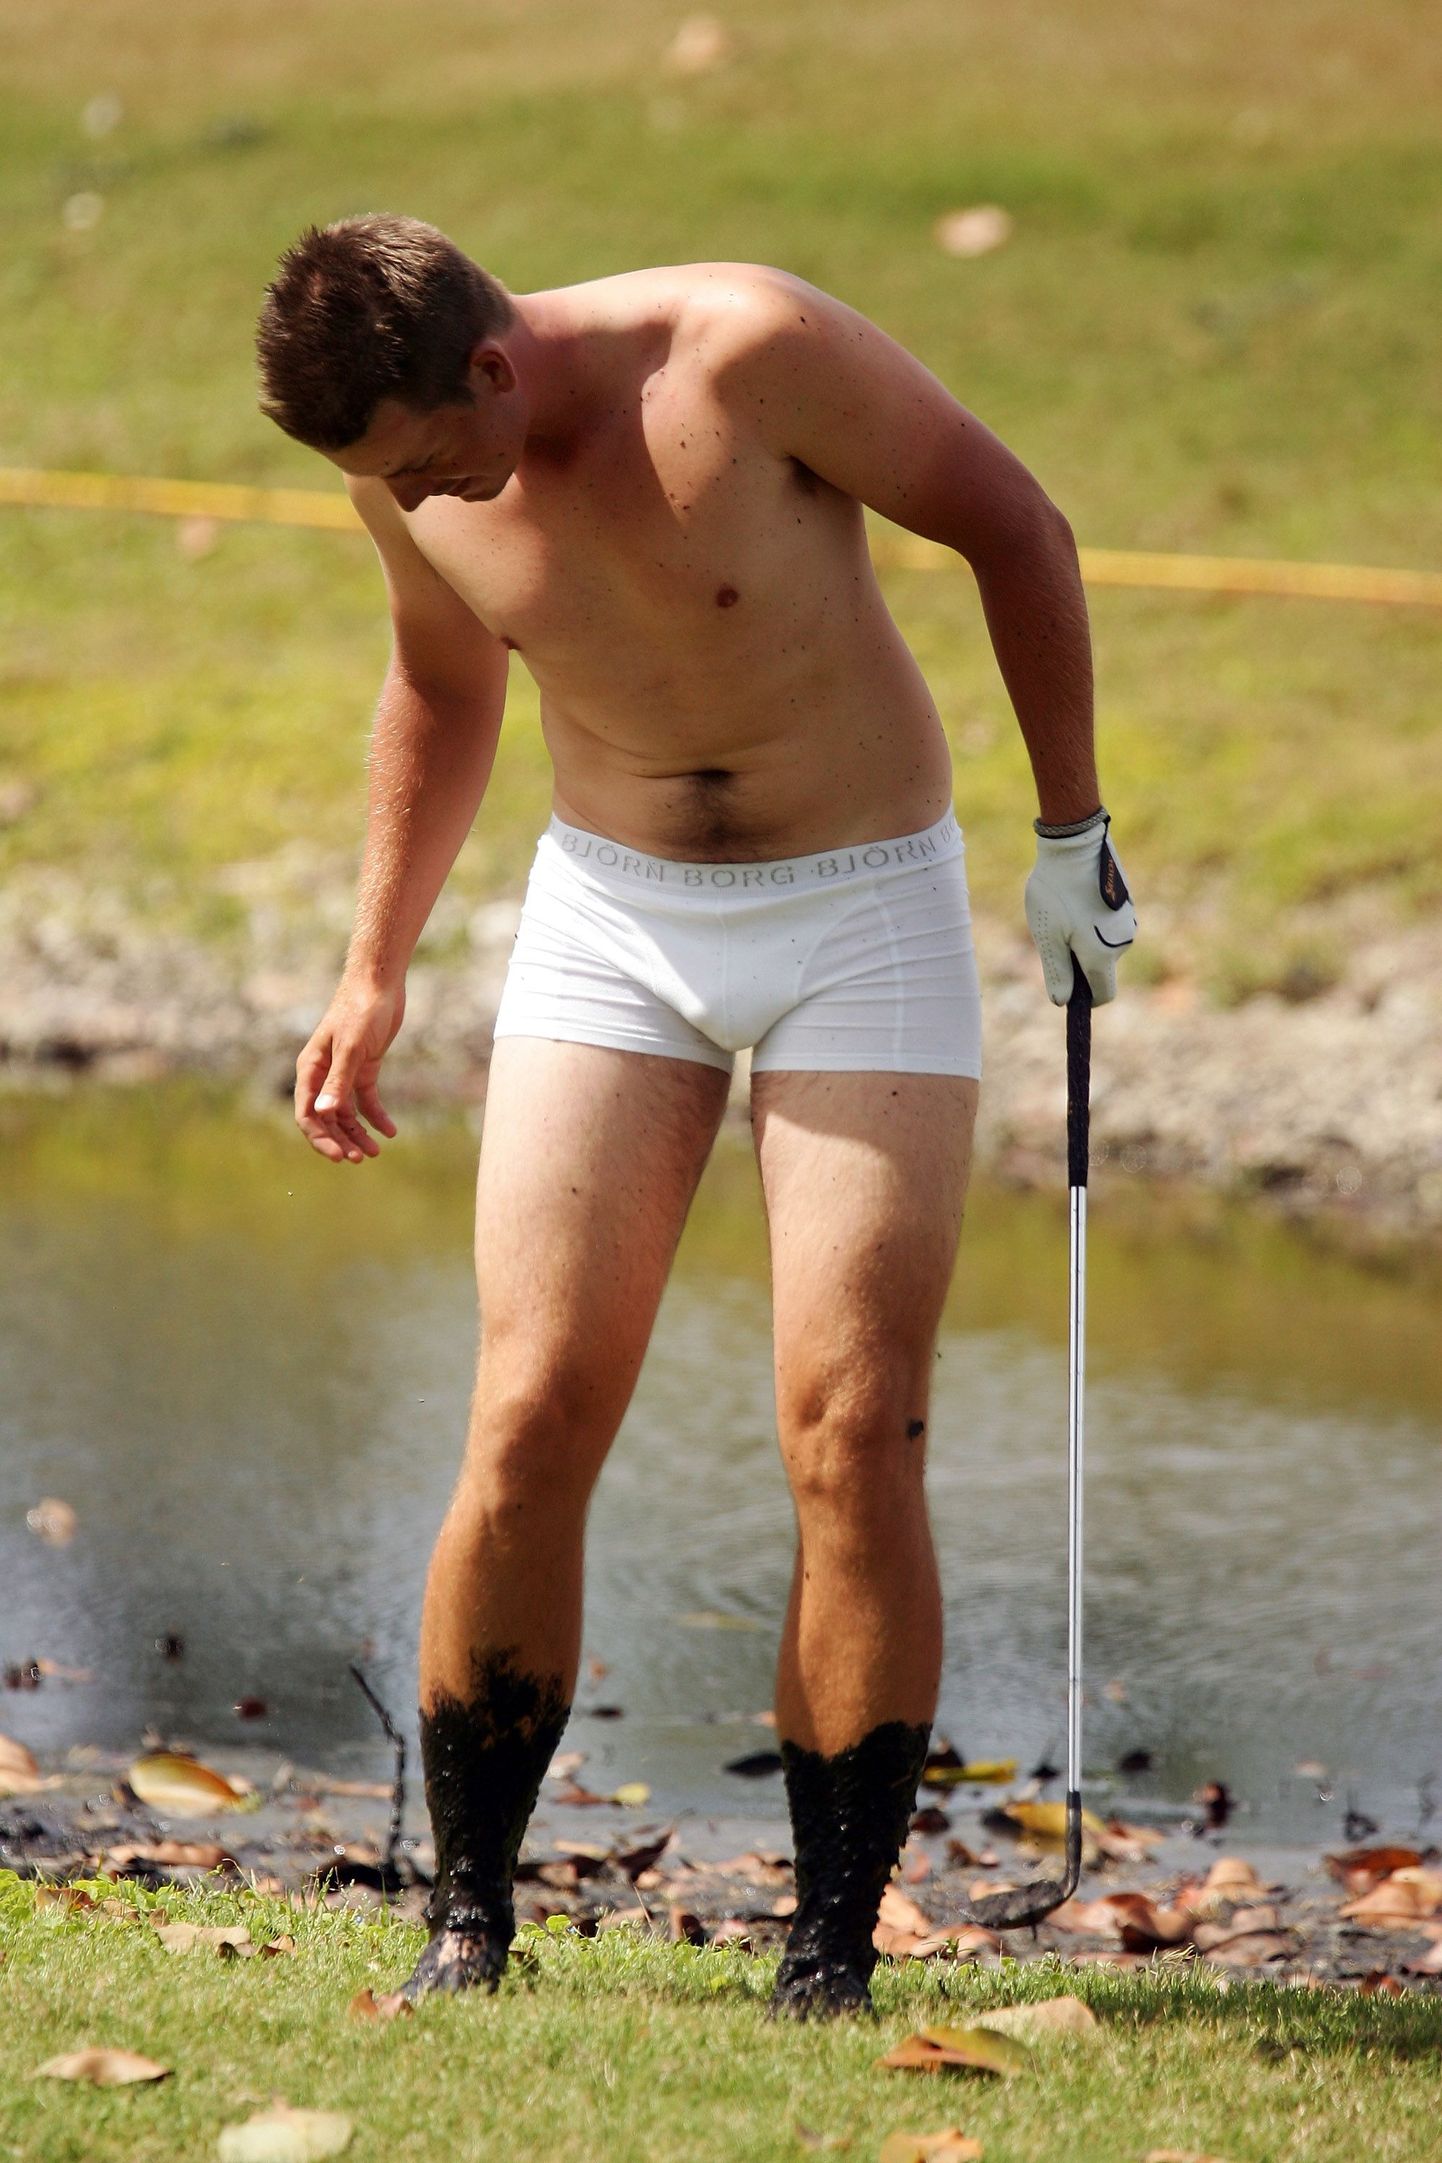 Maailma edetabeli seitsmes golfimängija rootslane Henrik Stenson oli eile Floridas peetaval golfivõistlusel sunnitud seljast heitma kõik riided peale aluspükste, et mudasest veest pall minema lüüa.